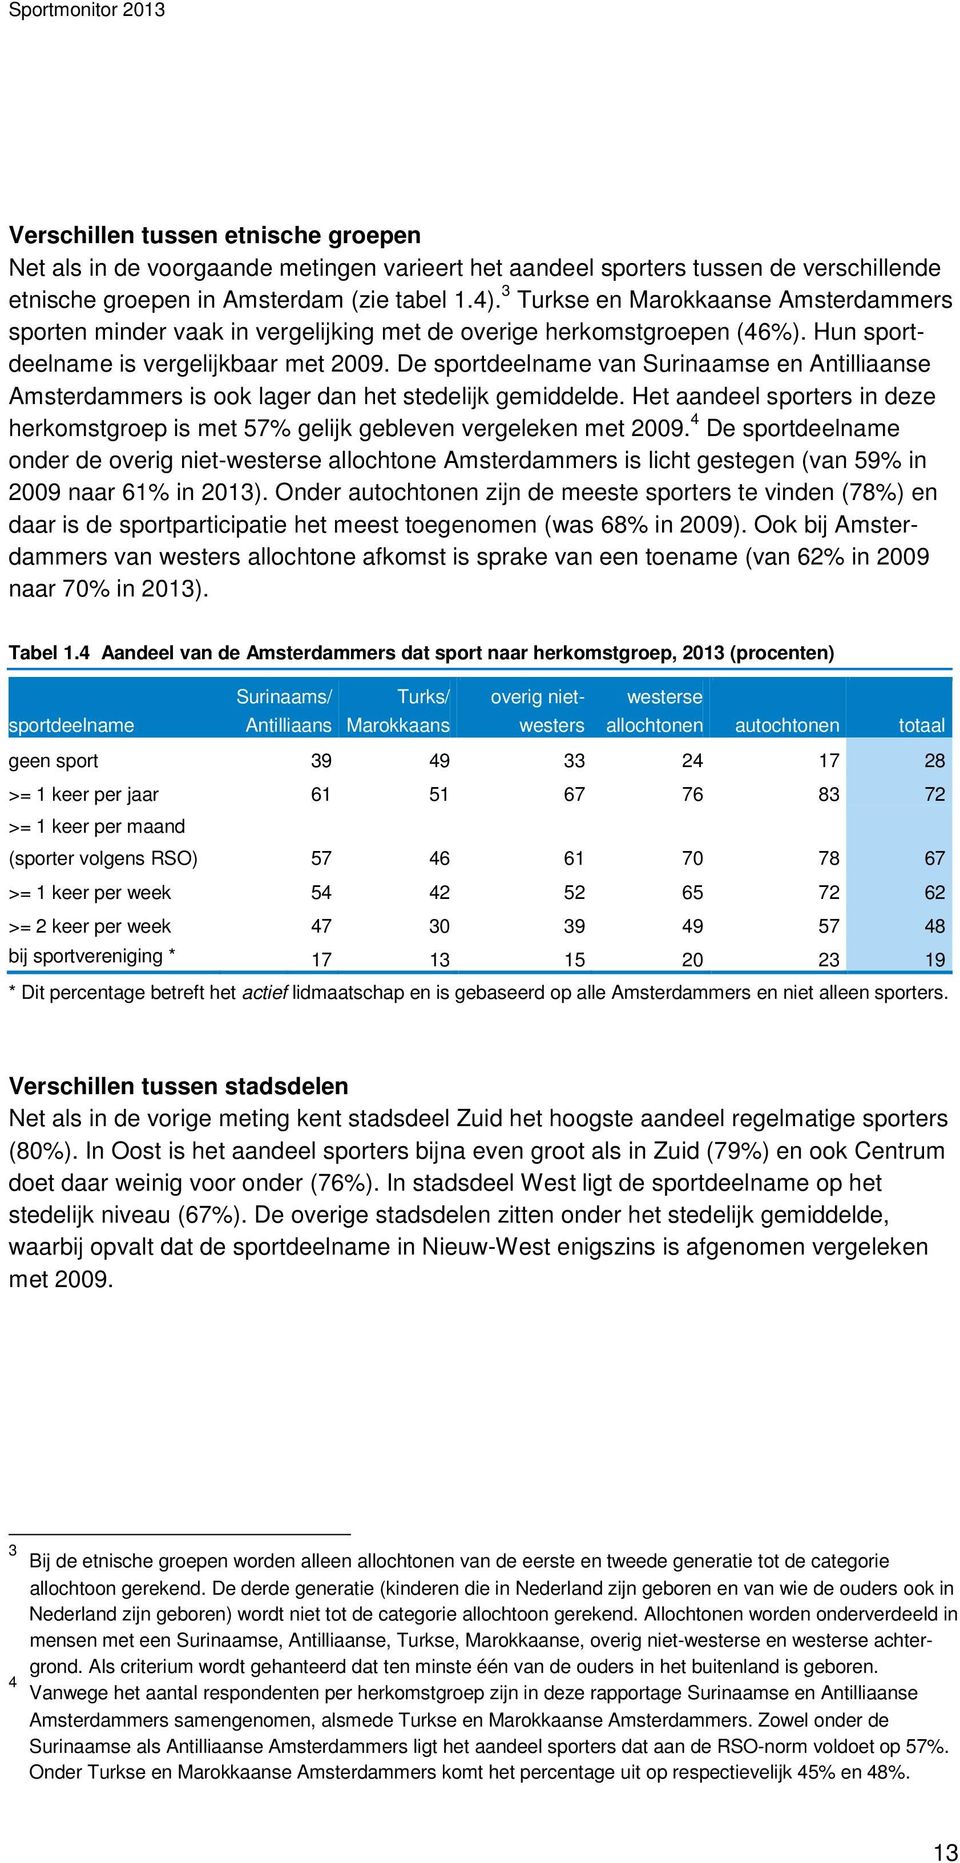 De sportdeelname van Surinaamse en Antilliaanse Amsterdammers is ook lager dan het stedelijk gemiddelde. Het aandeel sporters in deze herkomstgroep is met 57% gelijk gebleven vergeleken met 2009.